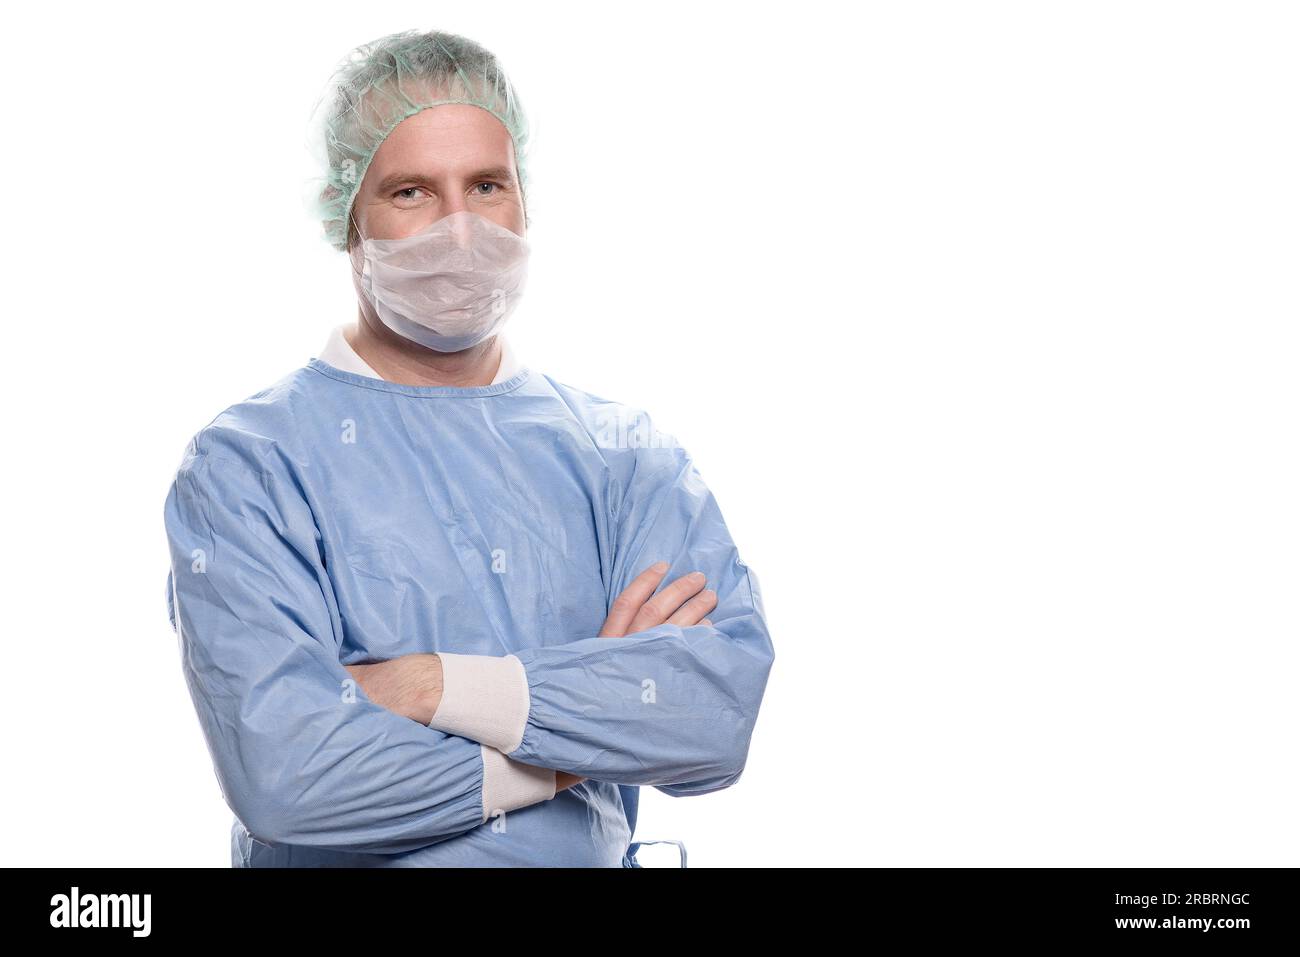 Freundliche Krankenschwester oder Arzt in chirurgischen Peelings, die ein Theaterkleid, eine Maske, eine Brille und eine Kappe tragen, die direkt auf die Kamera, den Kopf und die Schultern blickt Stockfoto